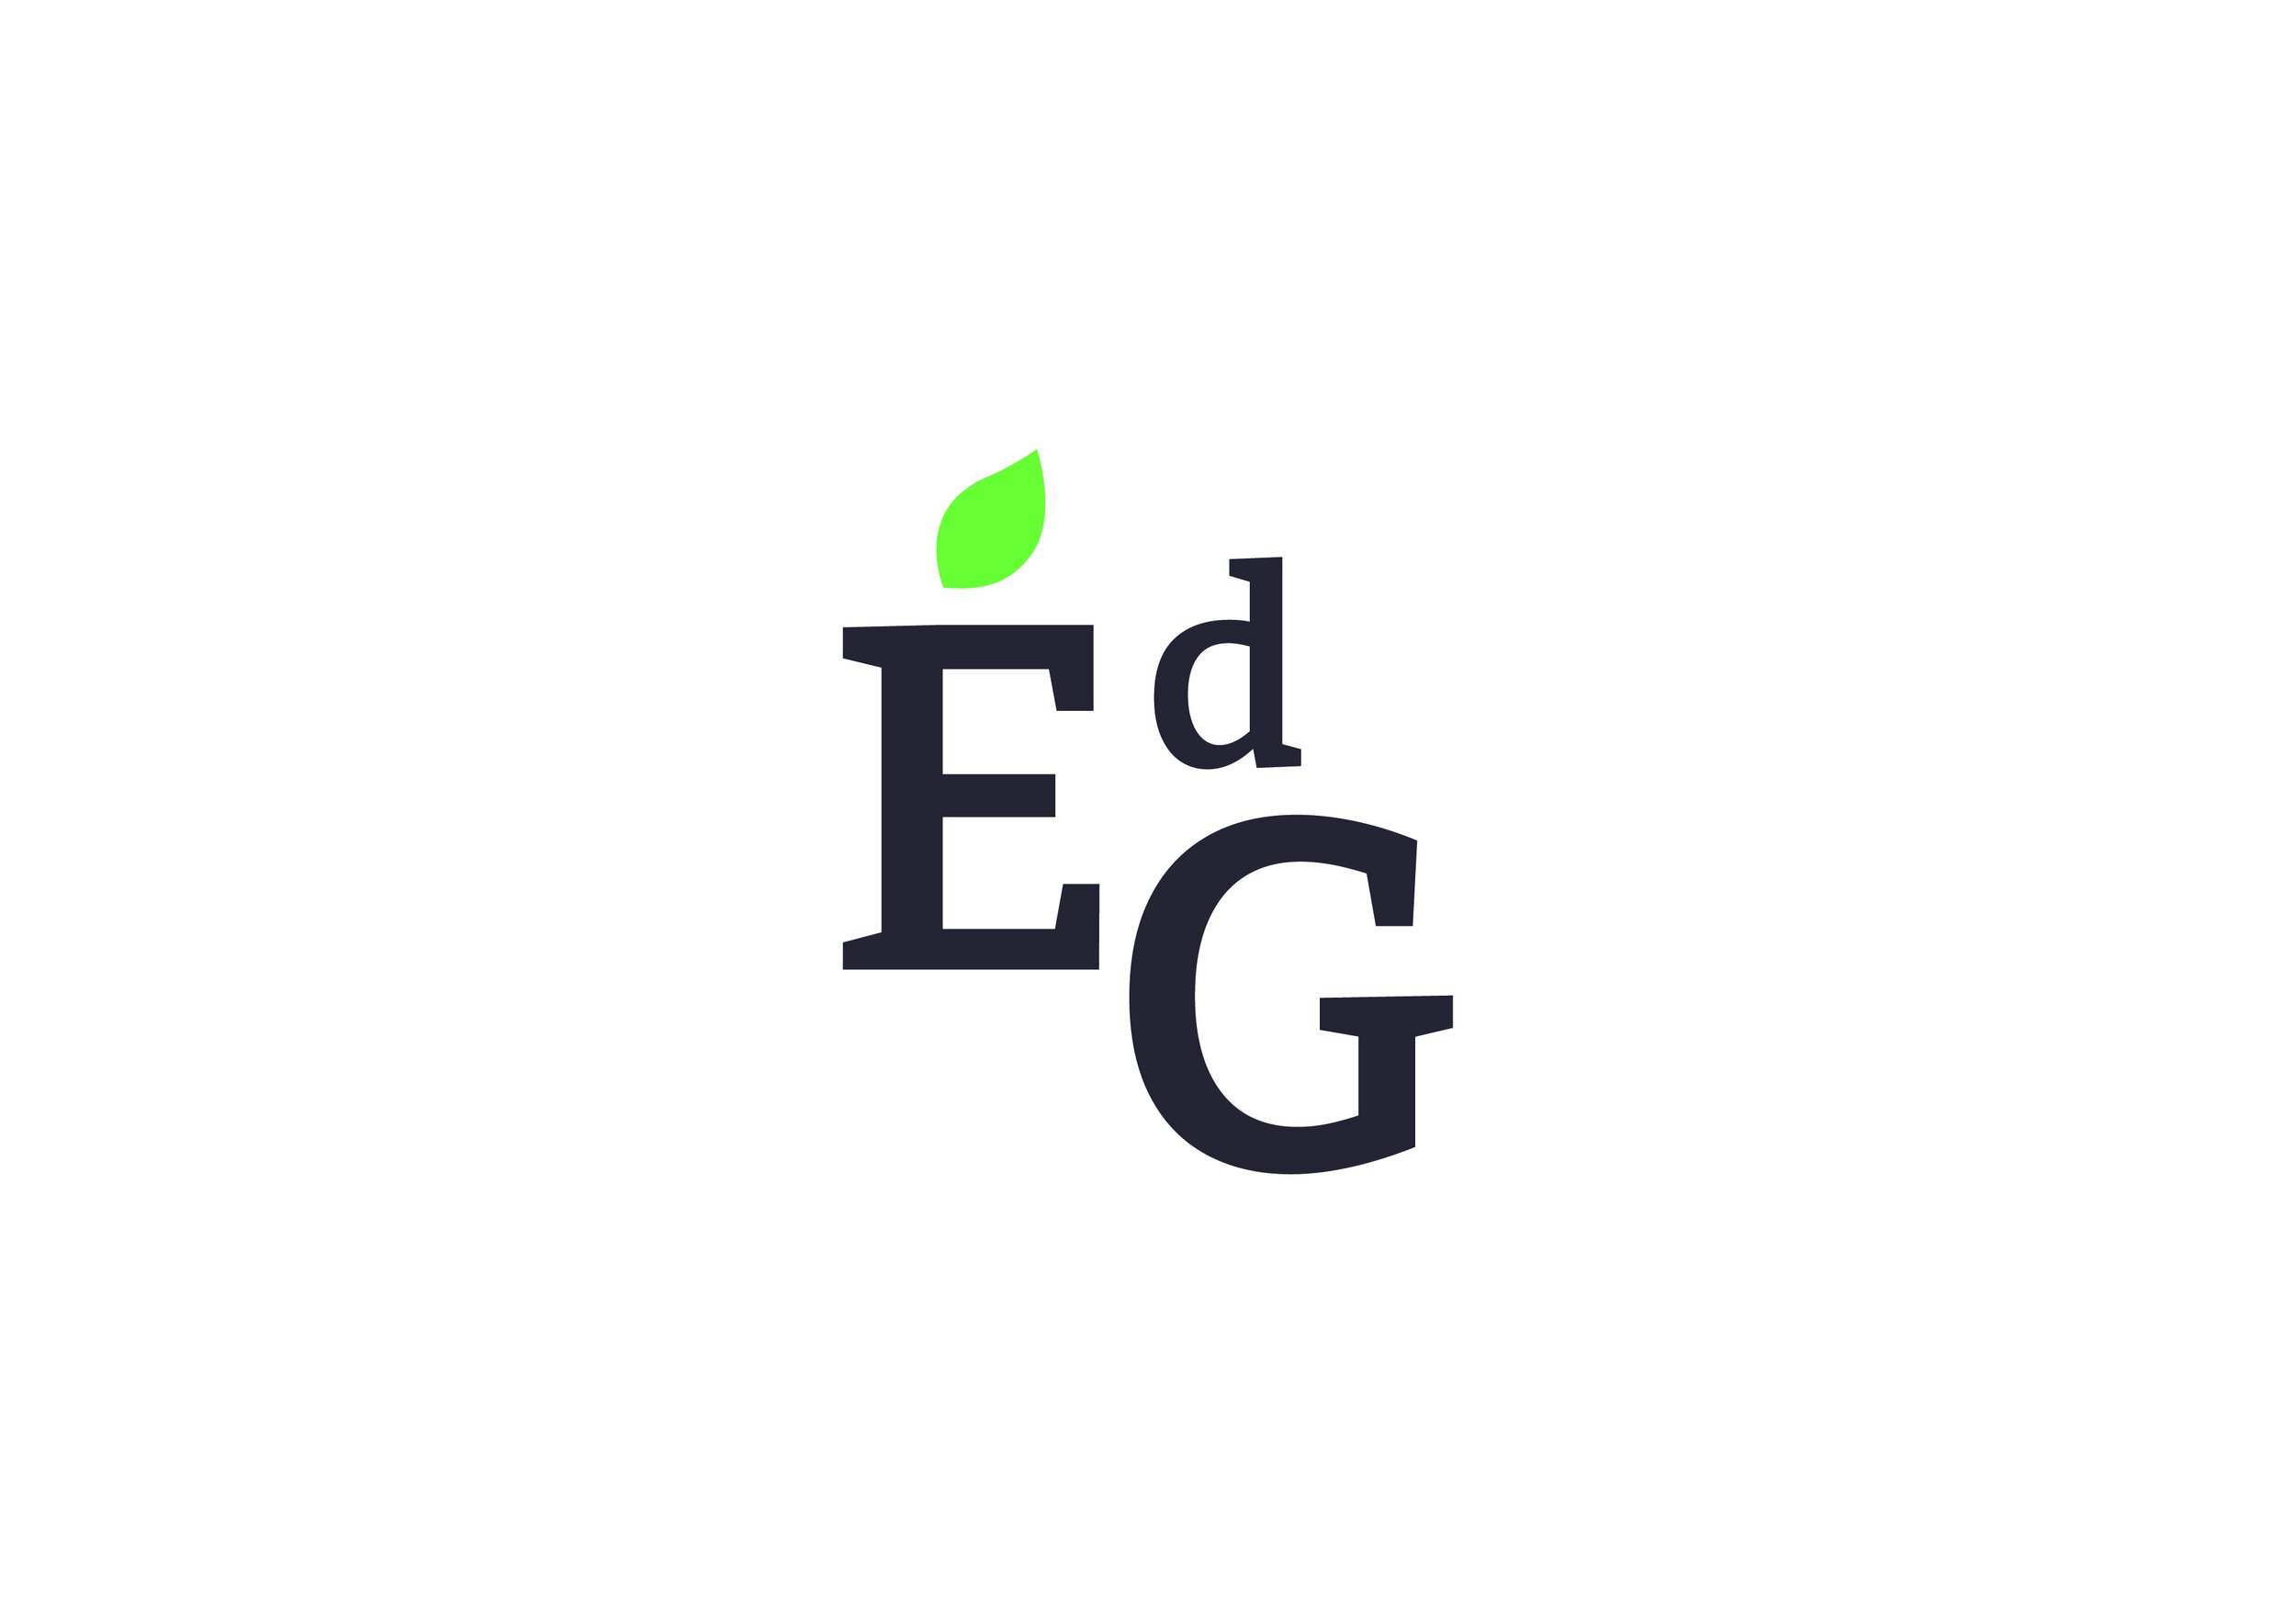 EDG_LOGO_stamp_01_1.jpg